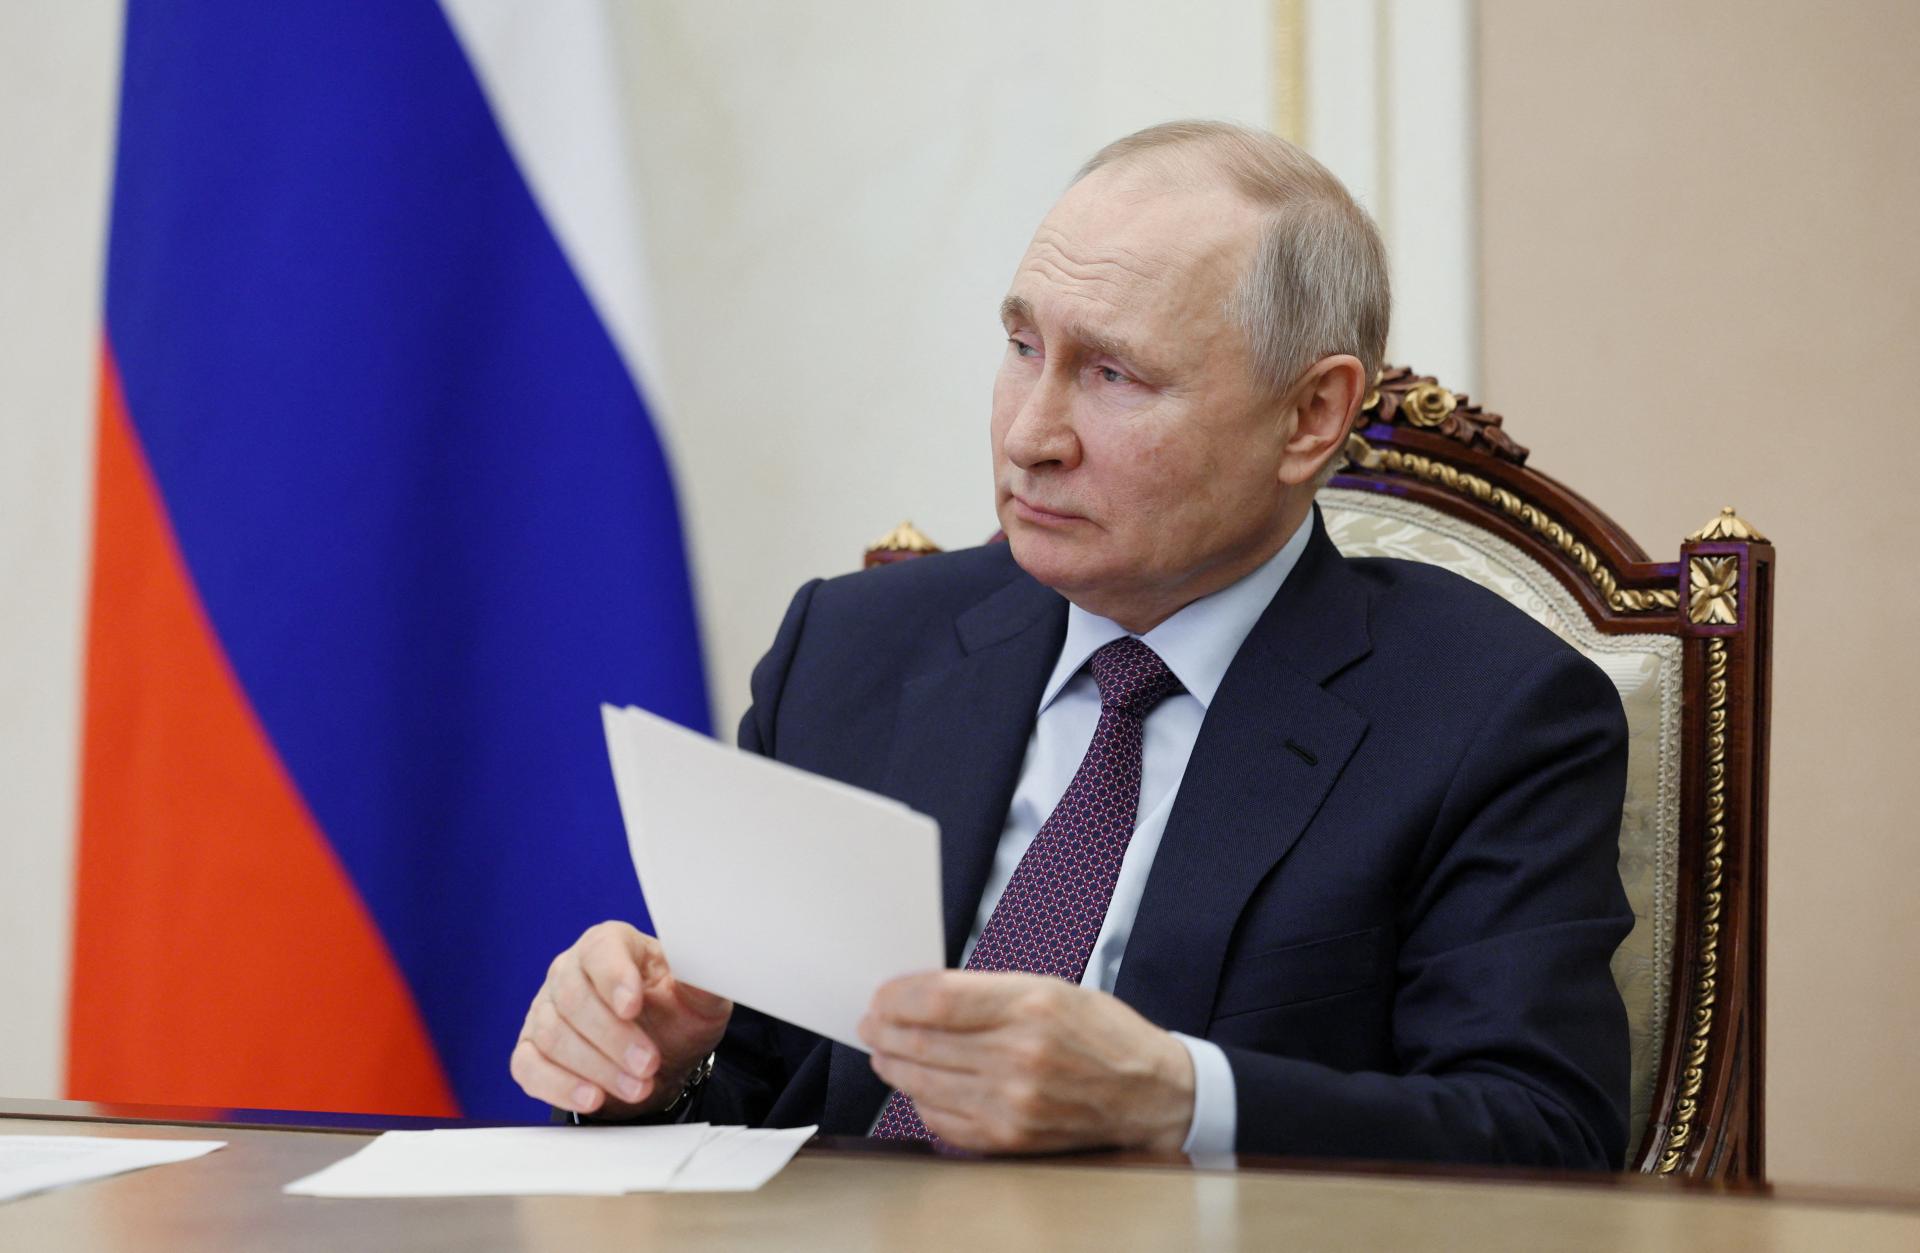 Zvrhne Putina revolúcia? Je to realistický scenár už v dohľadnej budúcnosti, tvrdí šéf nezávislého webu